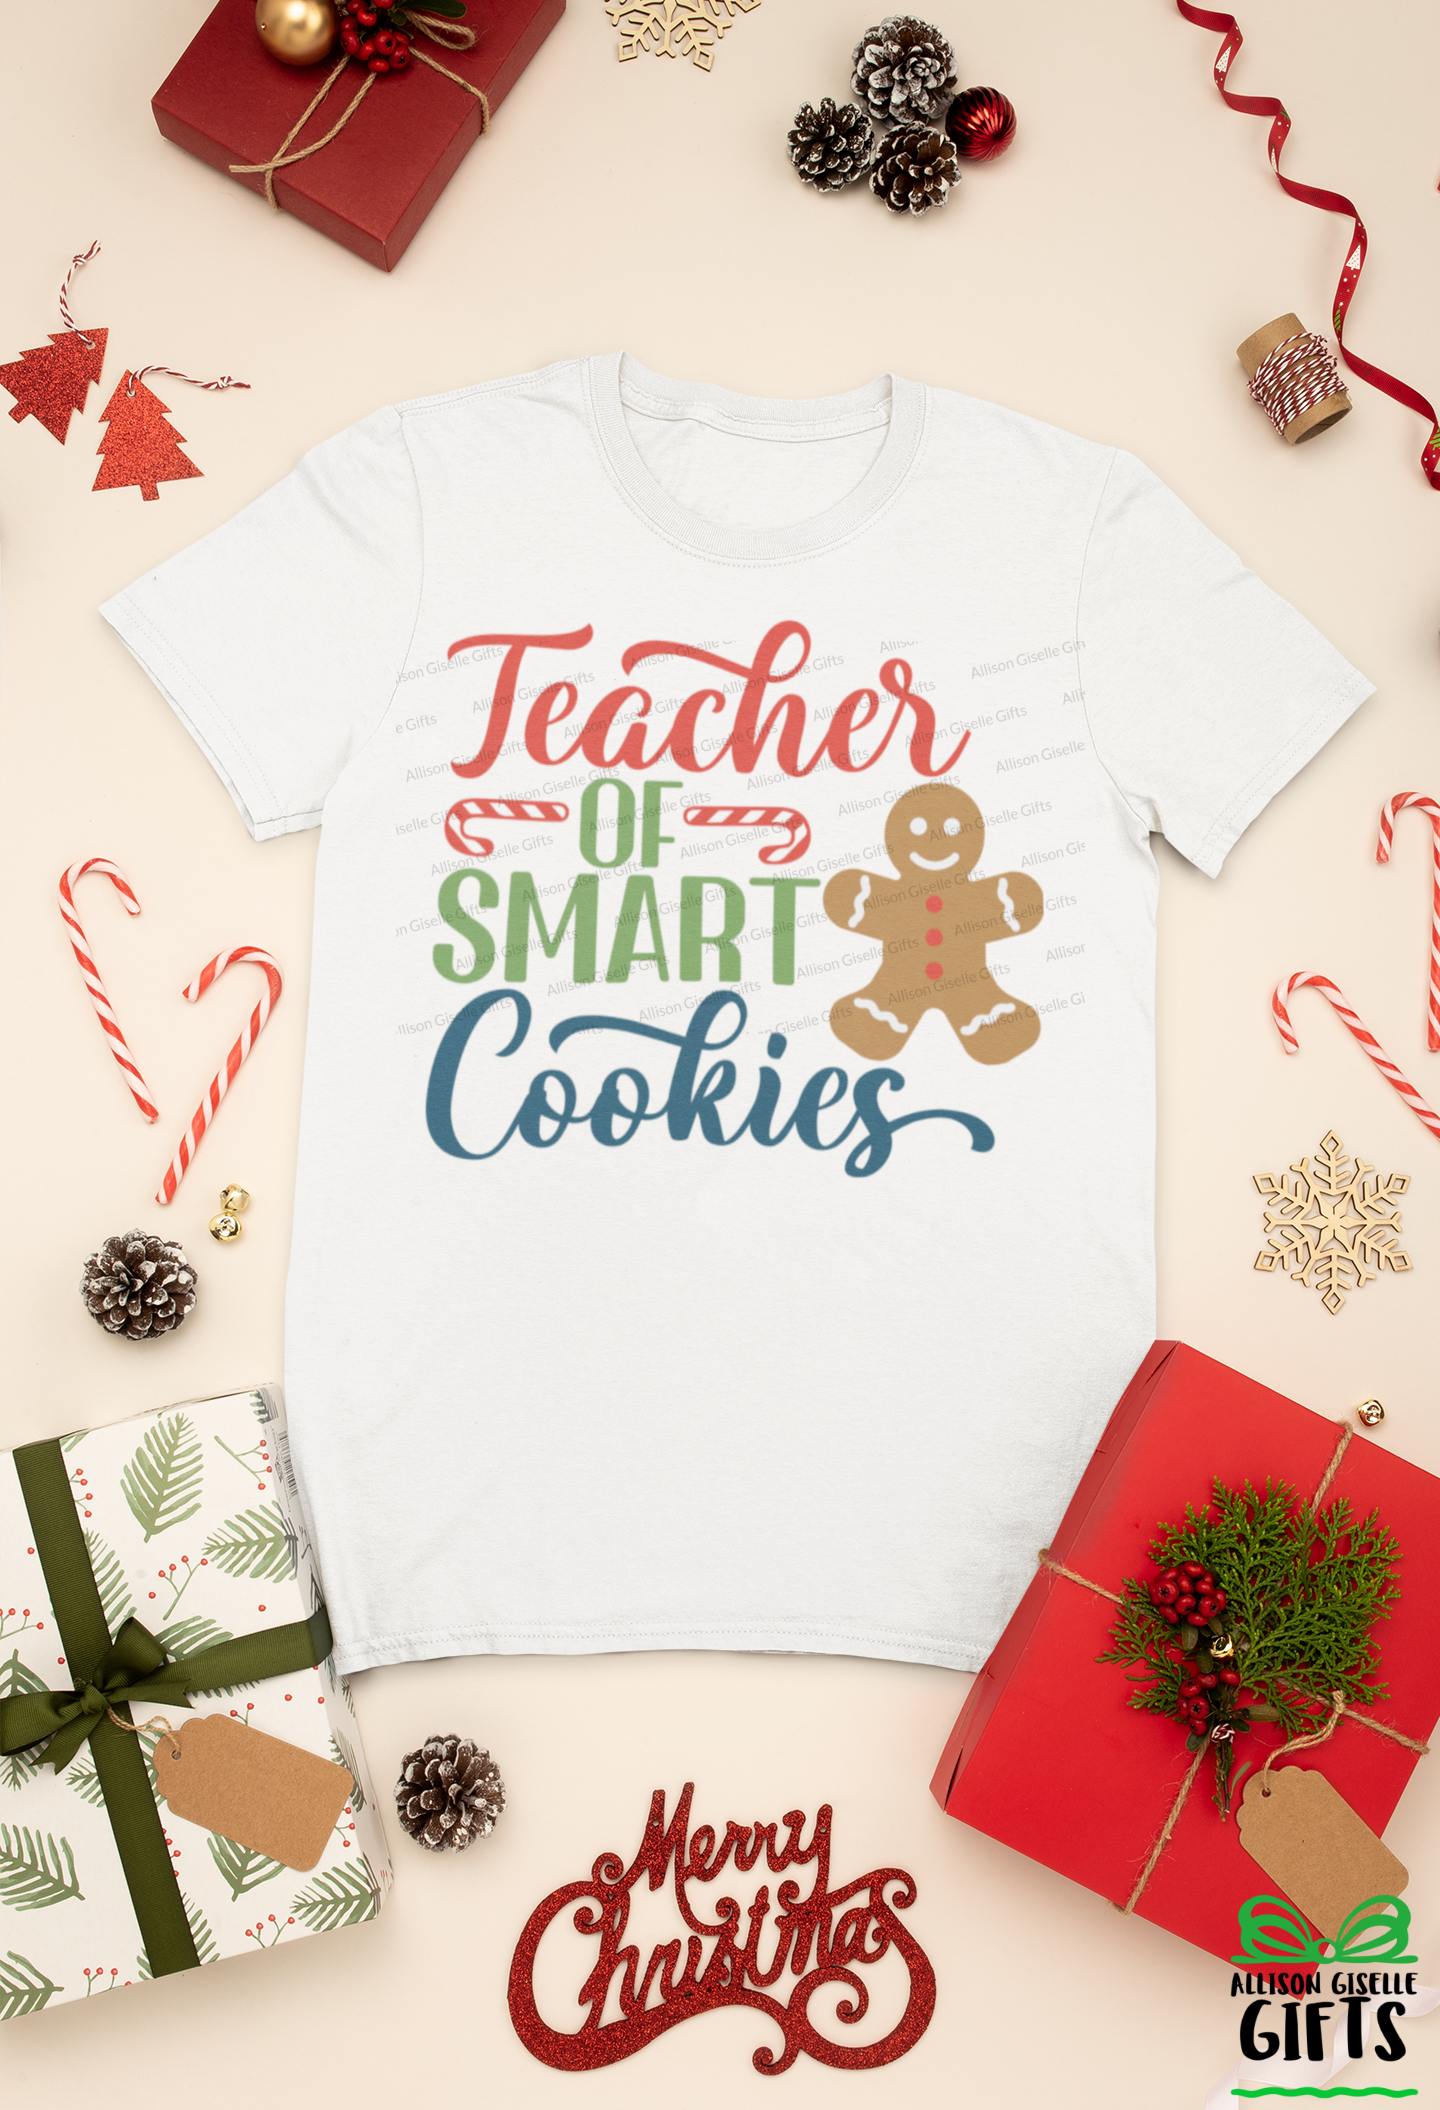 Teacher of Smart Cookies Christmas Shirt, Christmas Shirt, Christmas Shirt, Holiday T Shirt, Teacher Christmas Gift